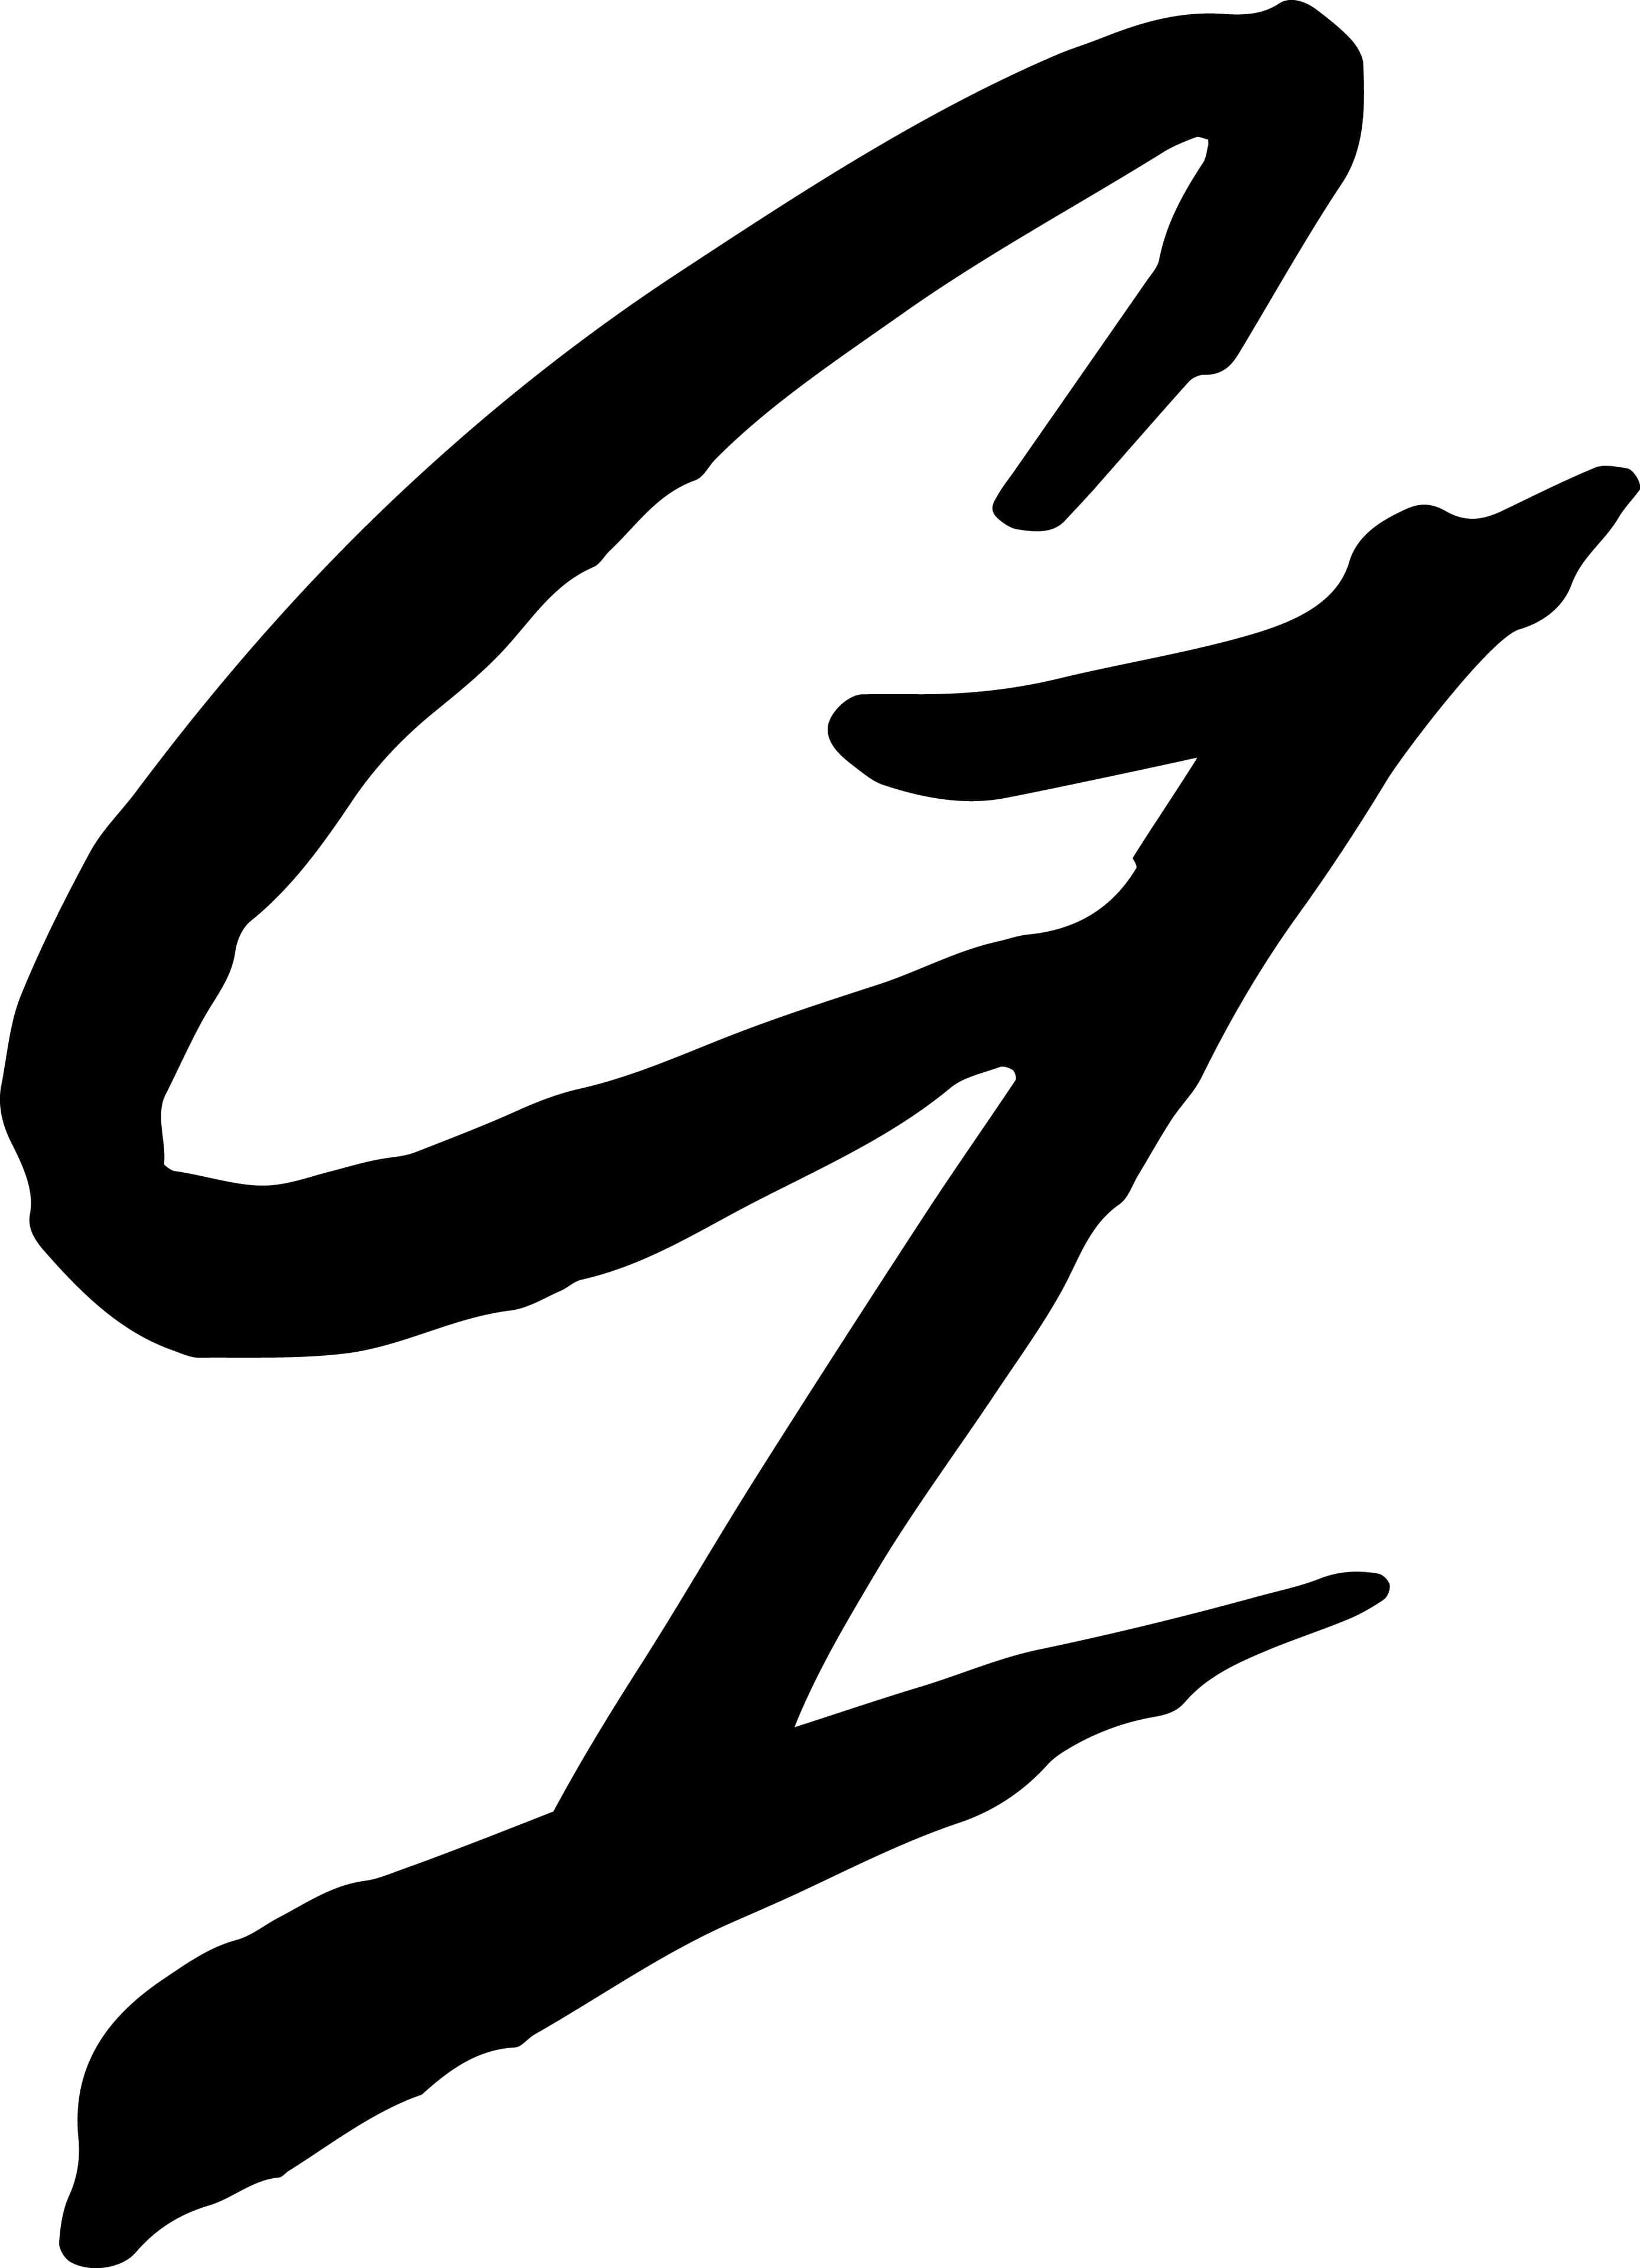 G1